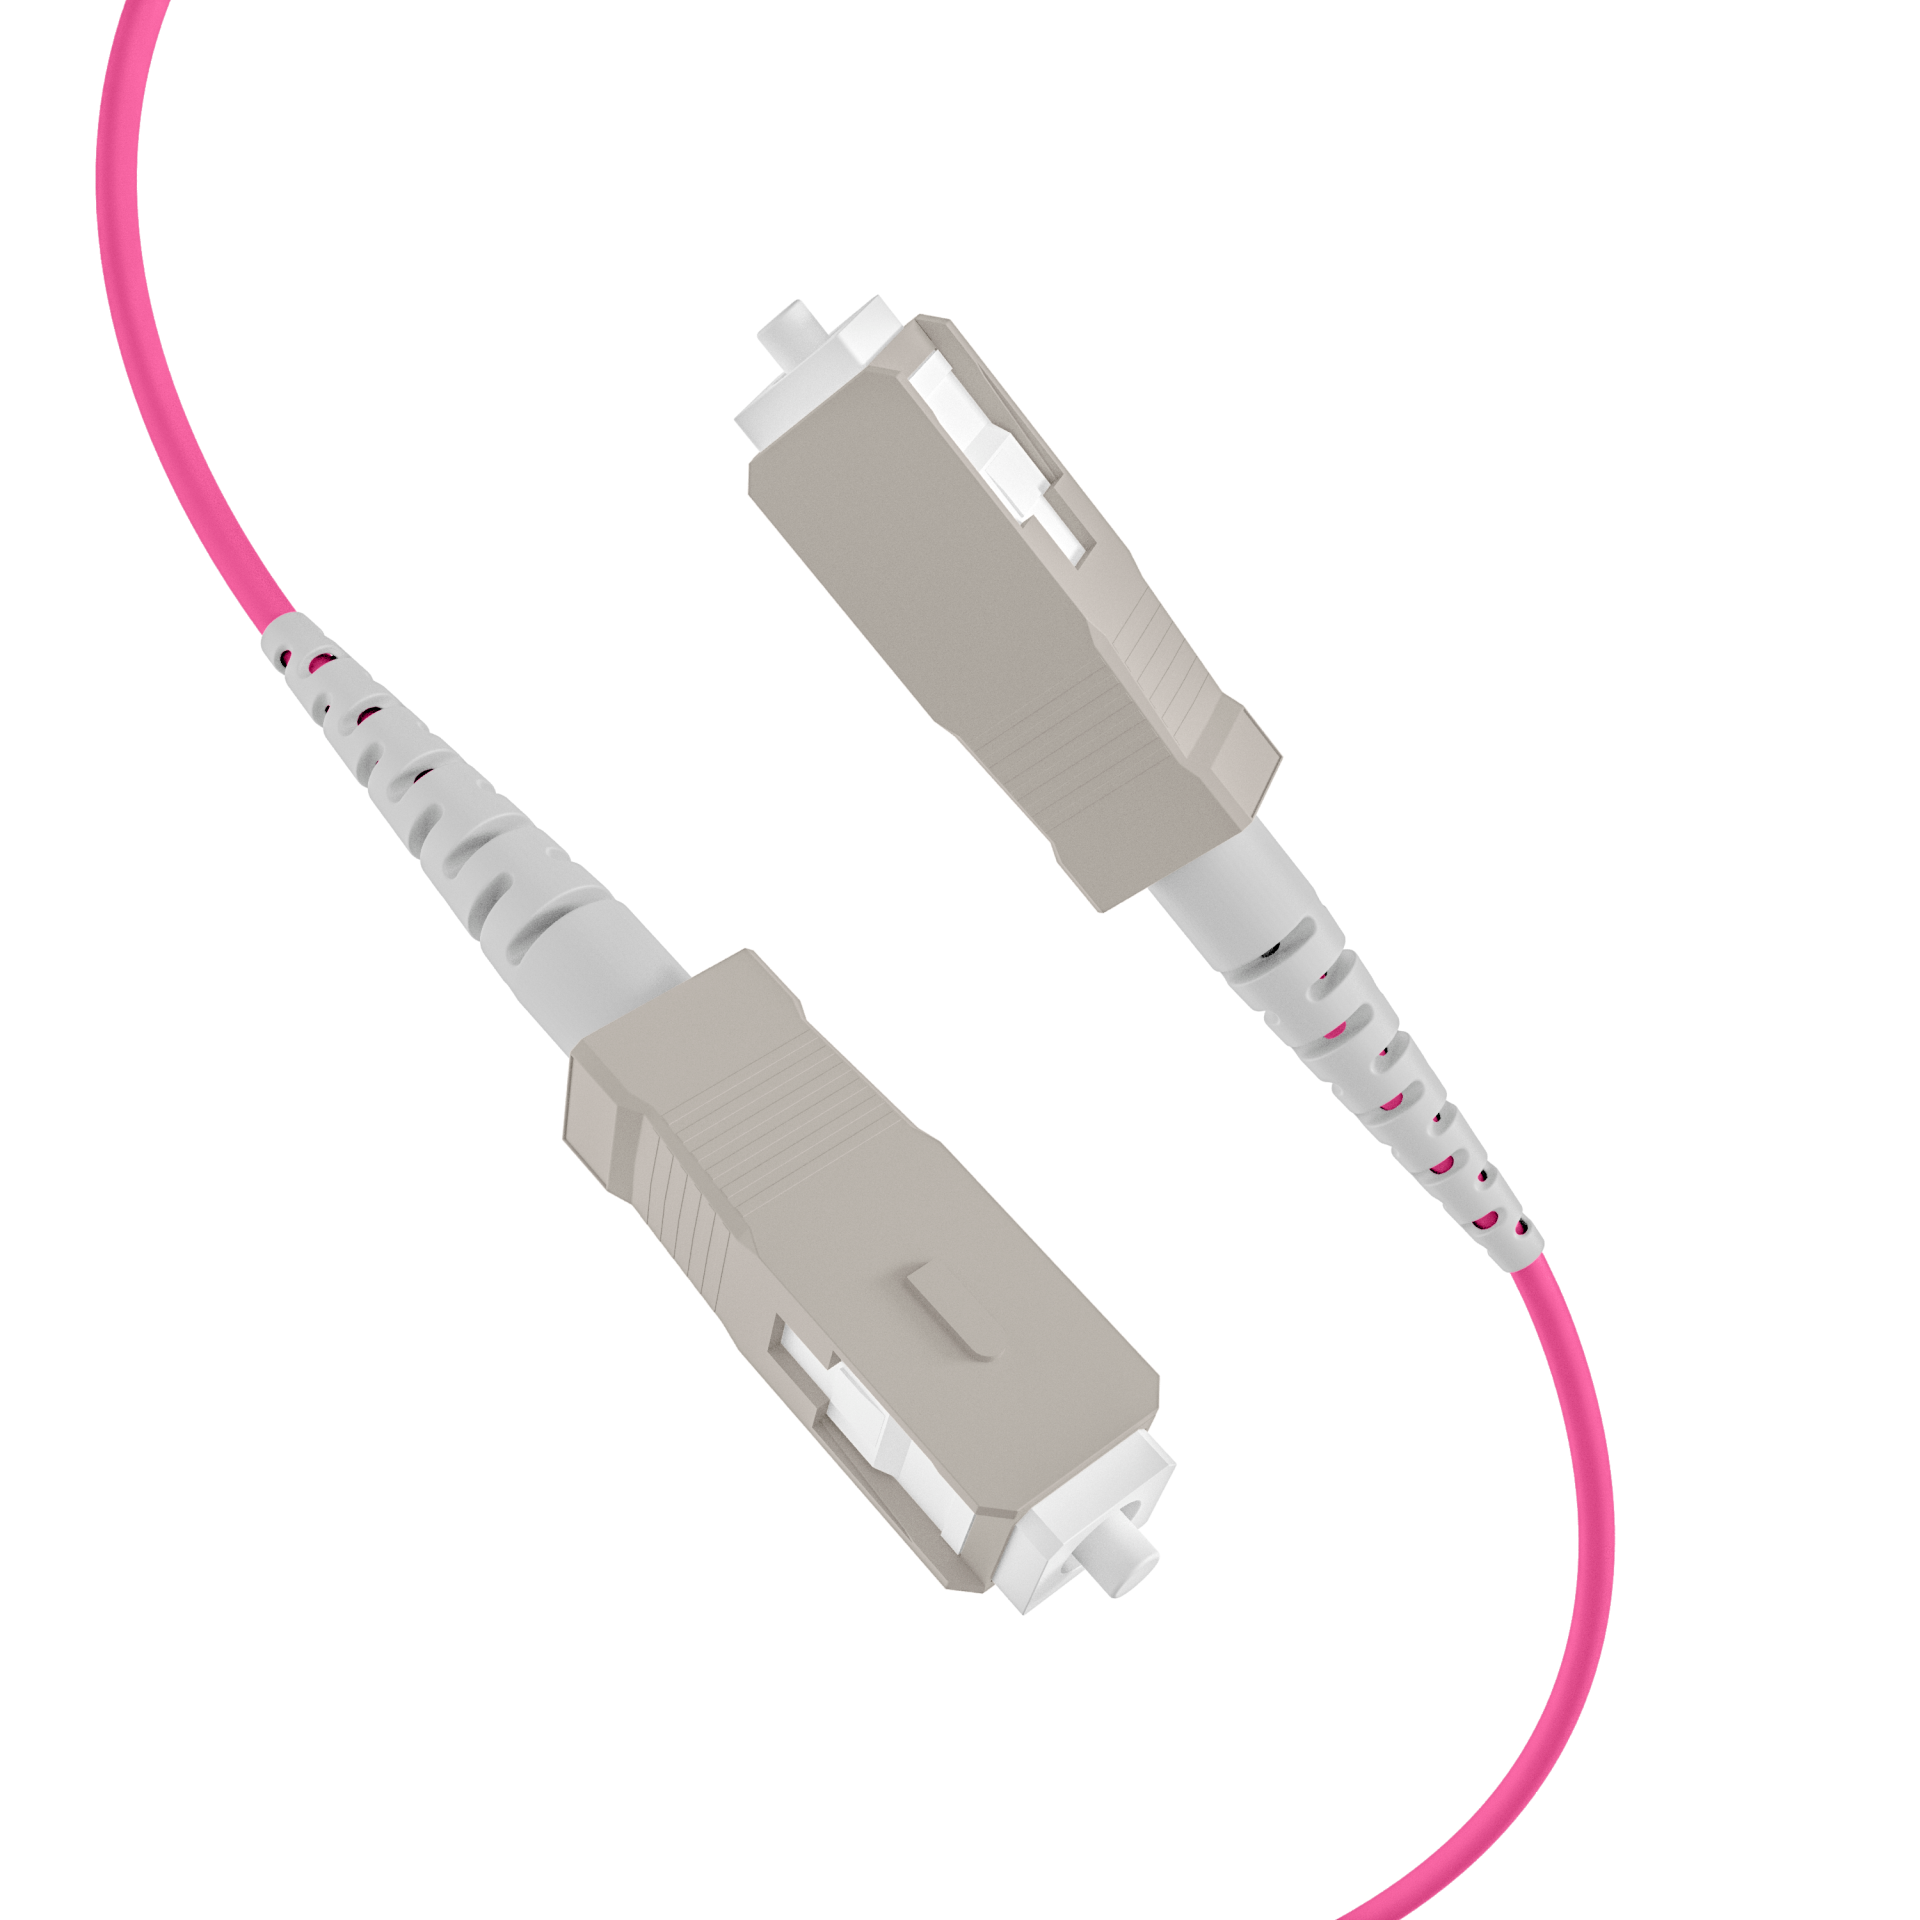 Trunk cable U-DQ(ZN)BH OM4 12G (1x12) SC-SC,190m Dca LSZH